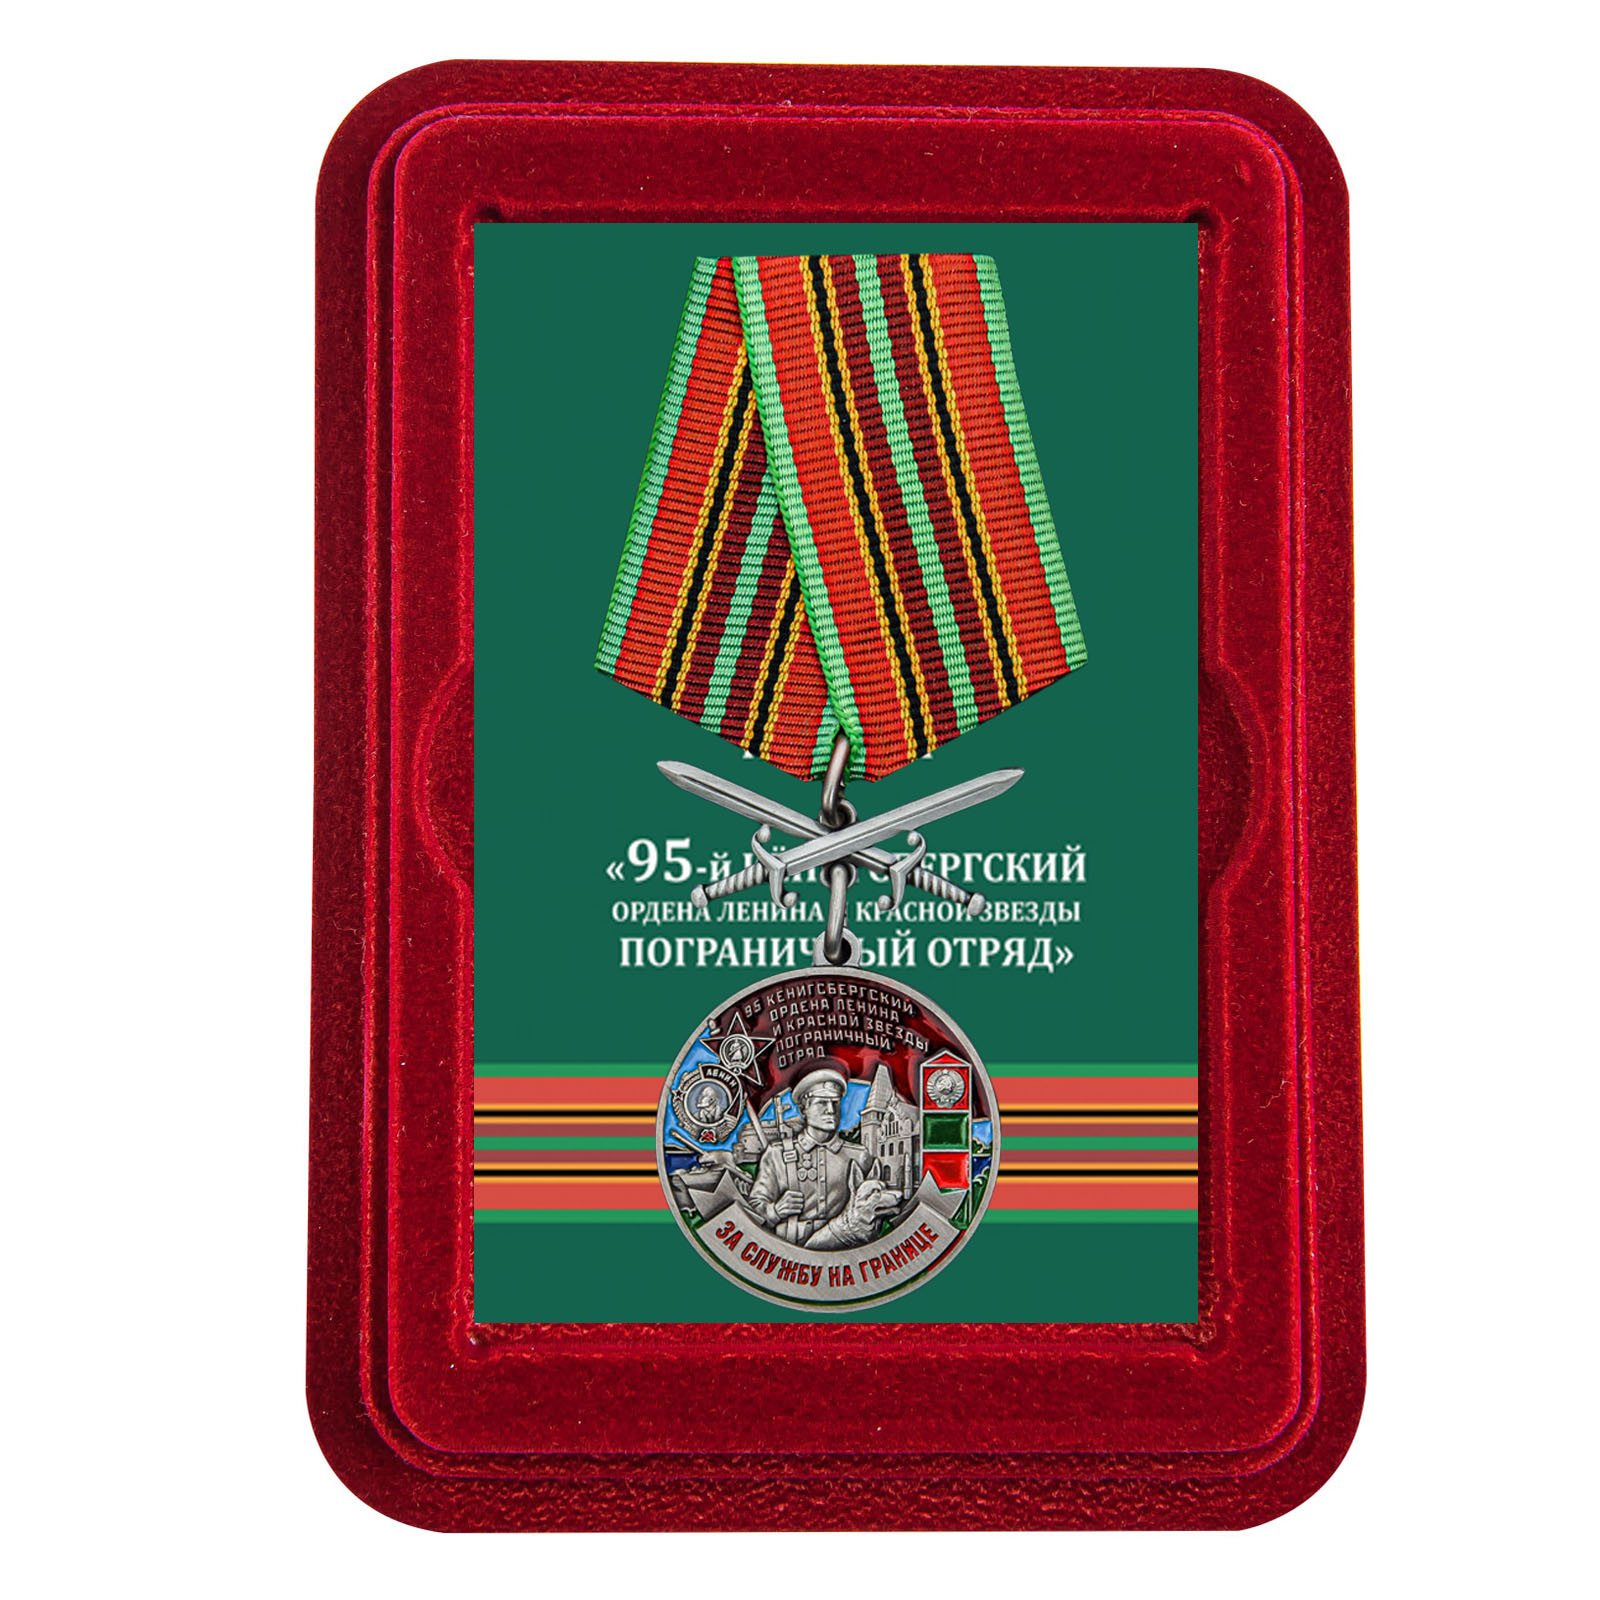 Купить медаль За службу в Кёнигсбергском пограничном отряде выгодно